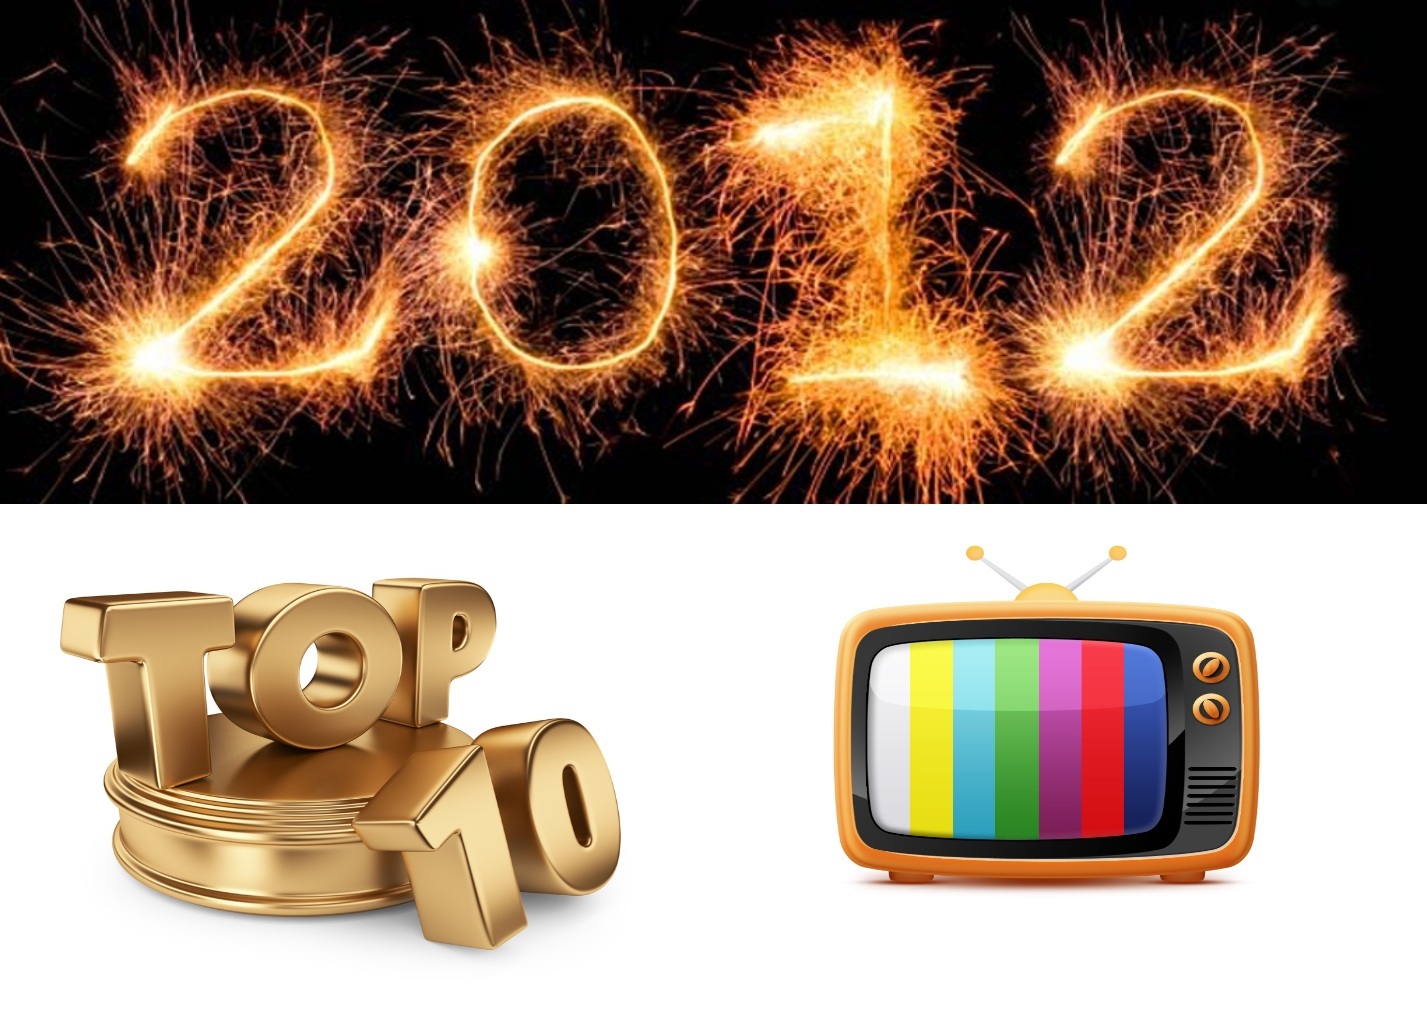 Τα 10 προγράμματα που σημείωσαν τη μεγαλύτερη τηλεθέαση το 2012!